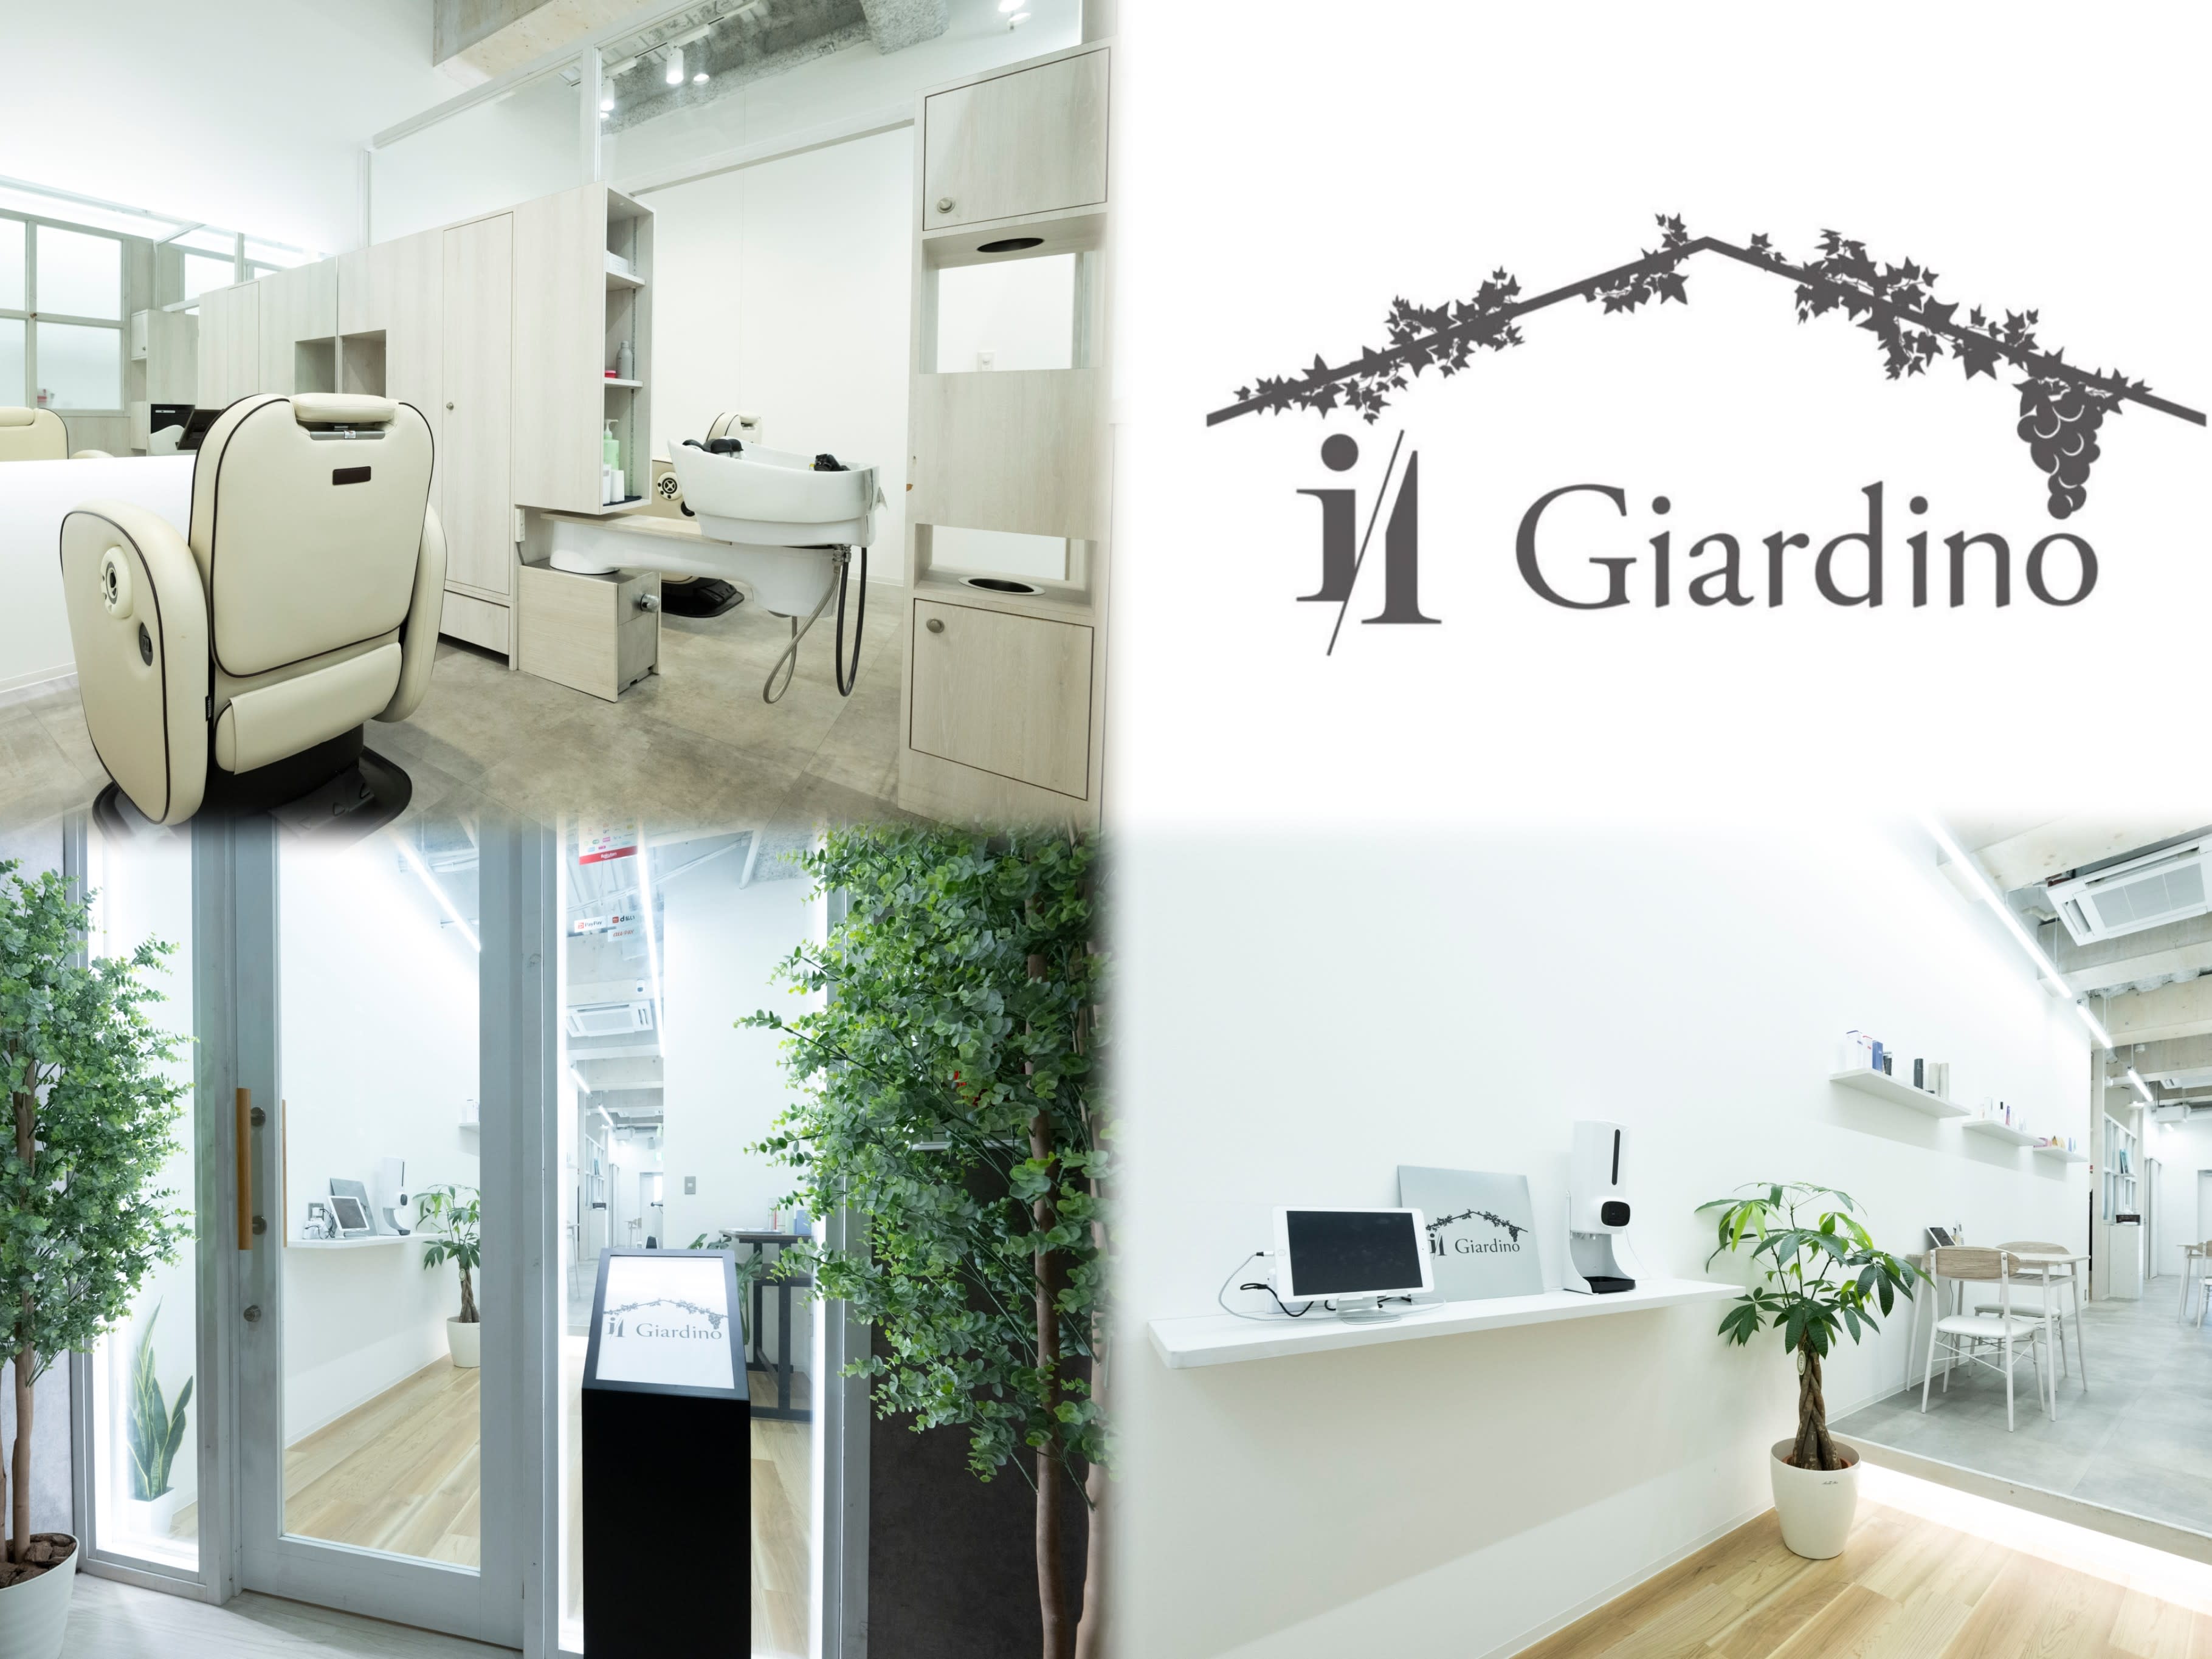 柏の葉キャンパス 美容室 il Giardino 髪質改善 完全個室内完結型サロン5月OPENのアイキャッチ画像